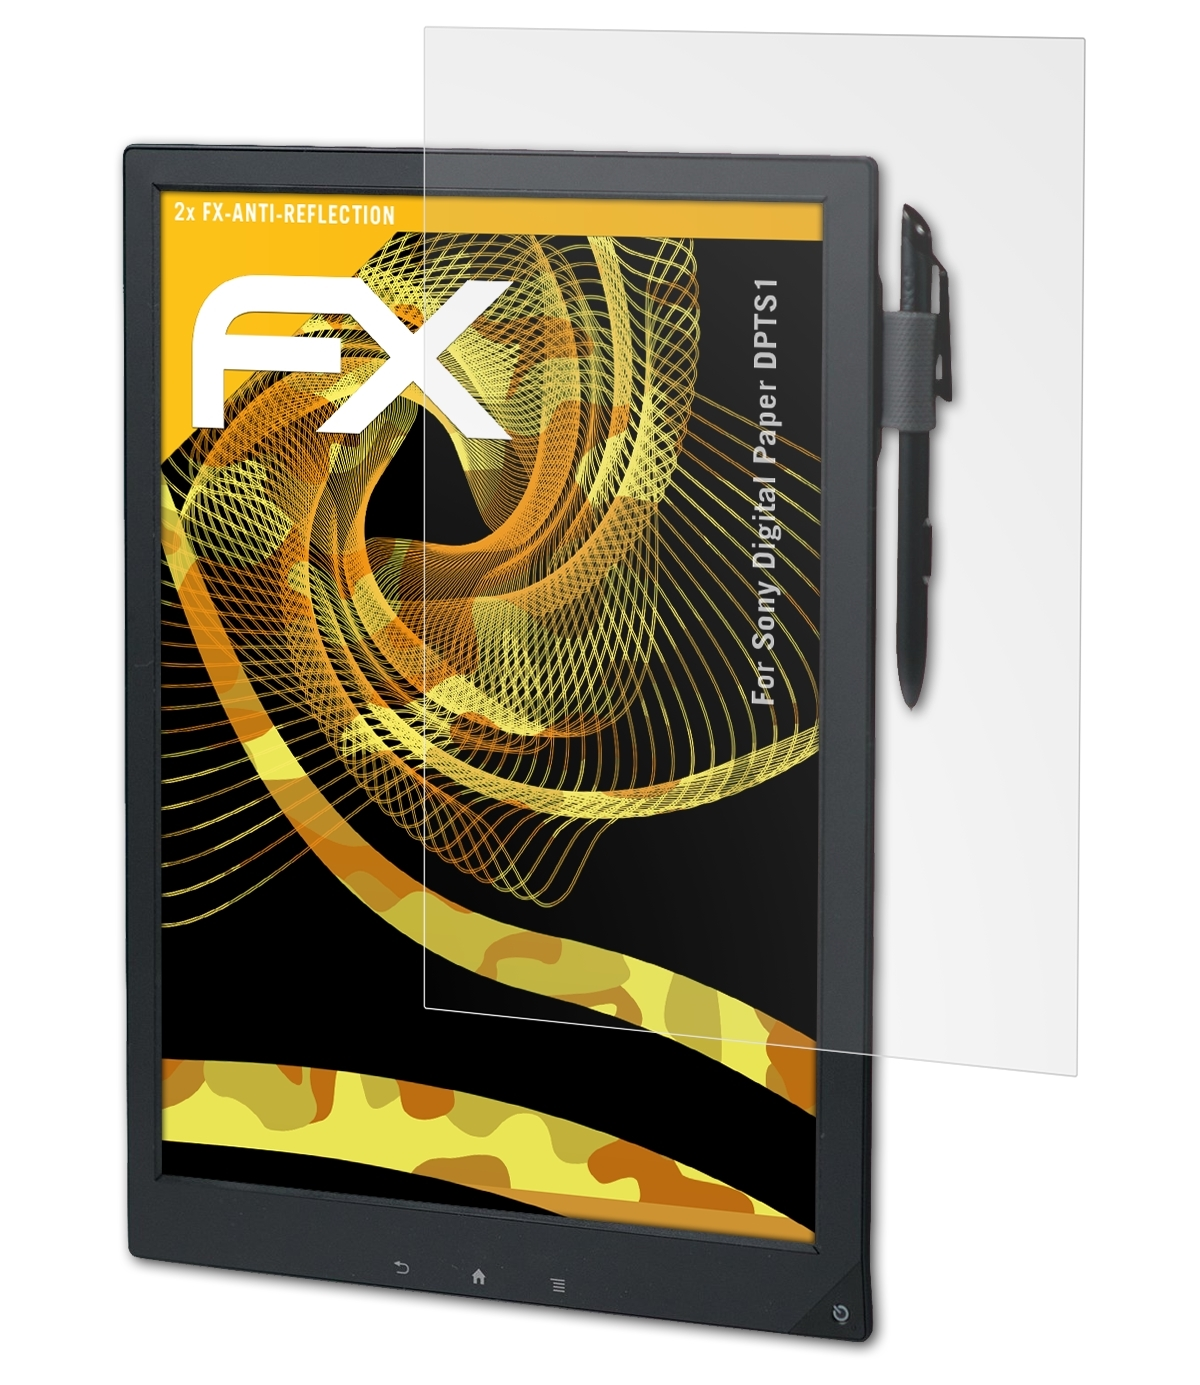 (DPTS1)) 2x FX-Antireflex Displayschutz(für ATFOLIX Digital Sony Paper